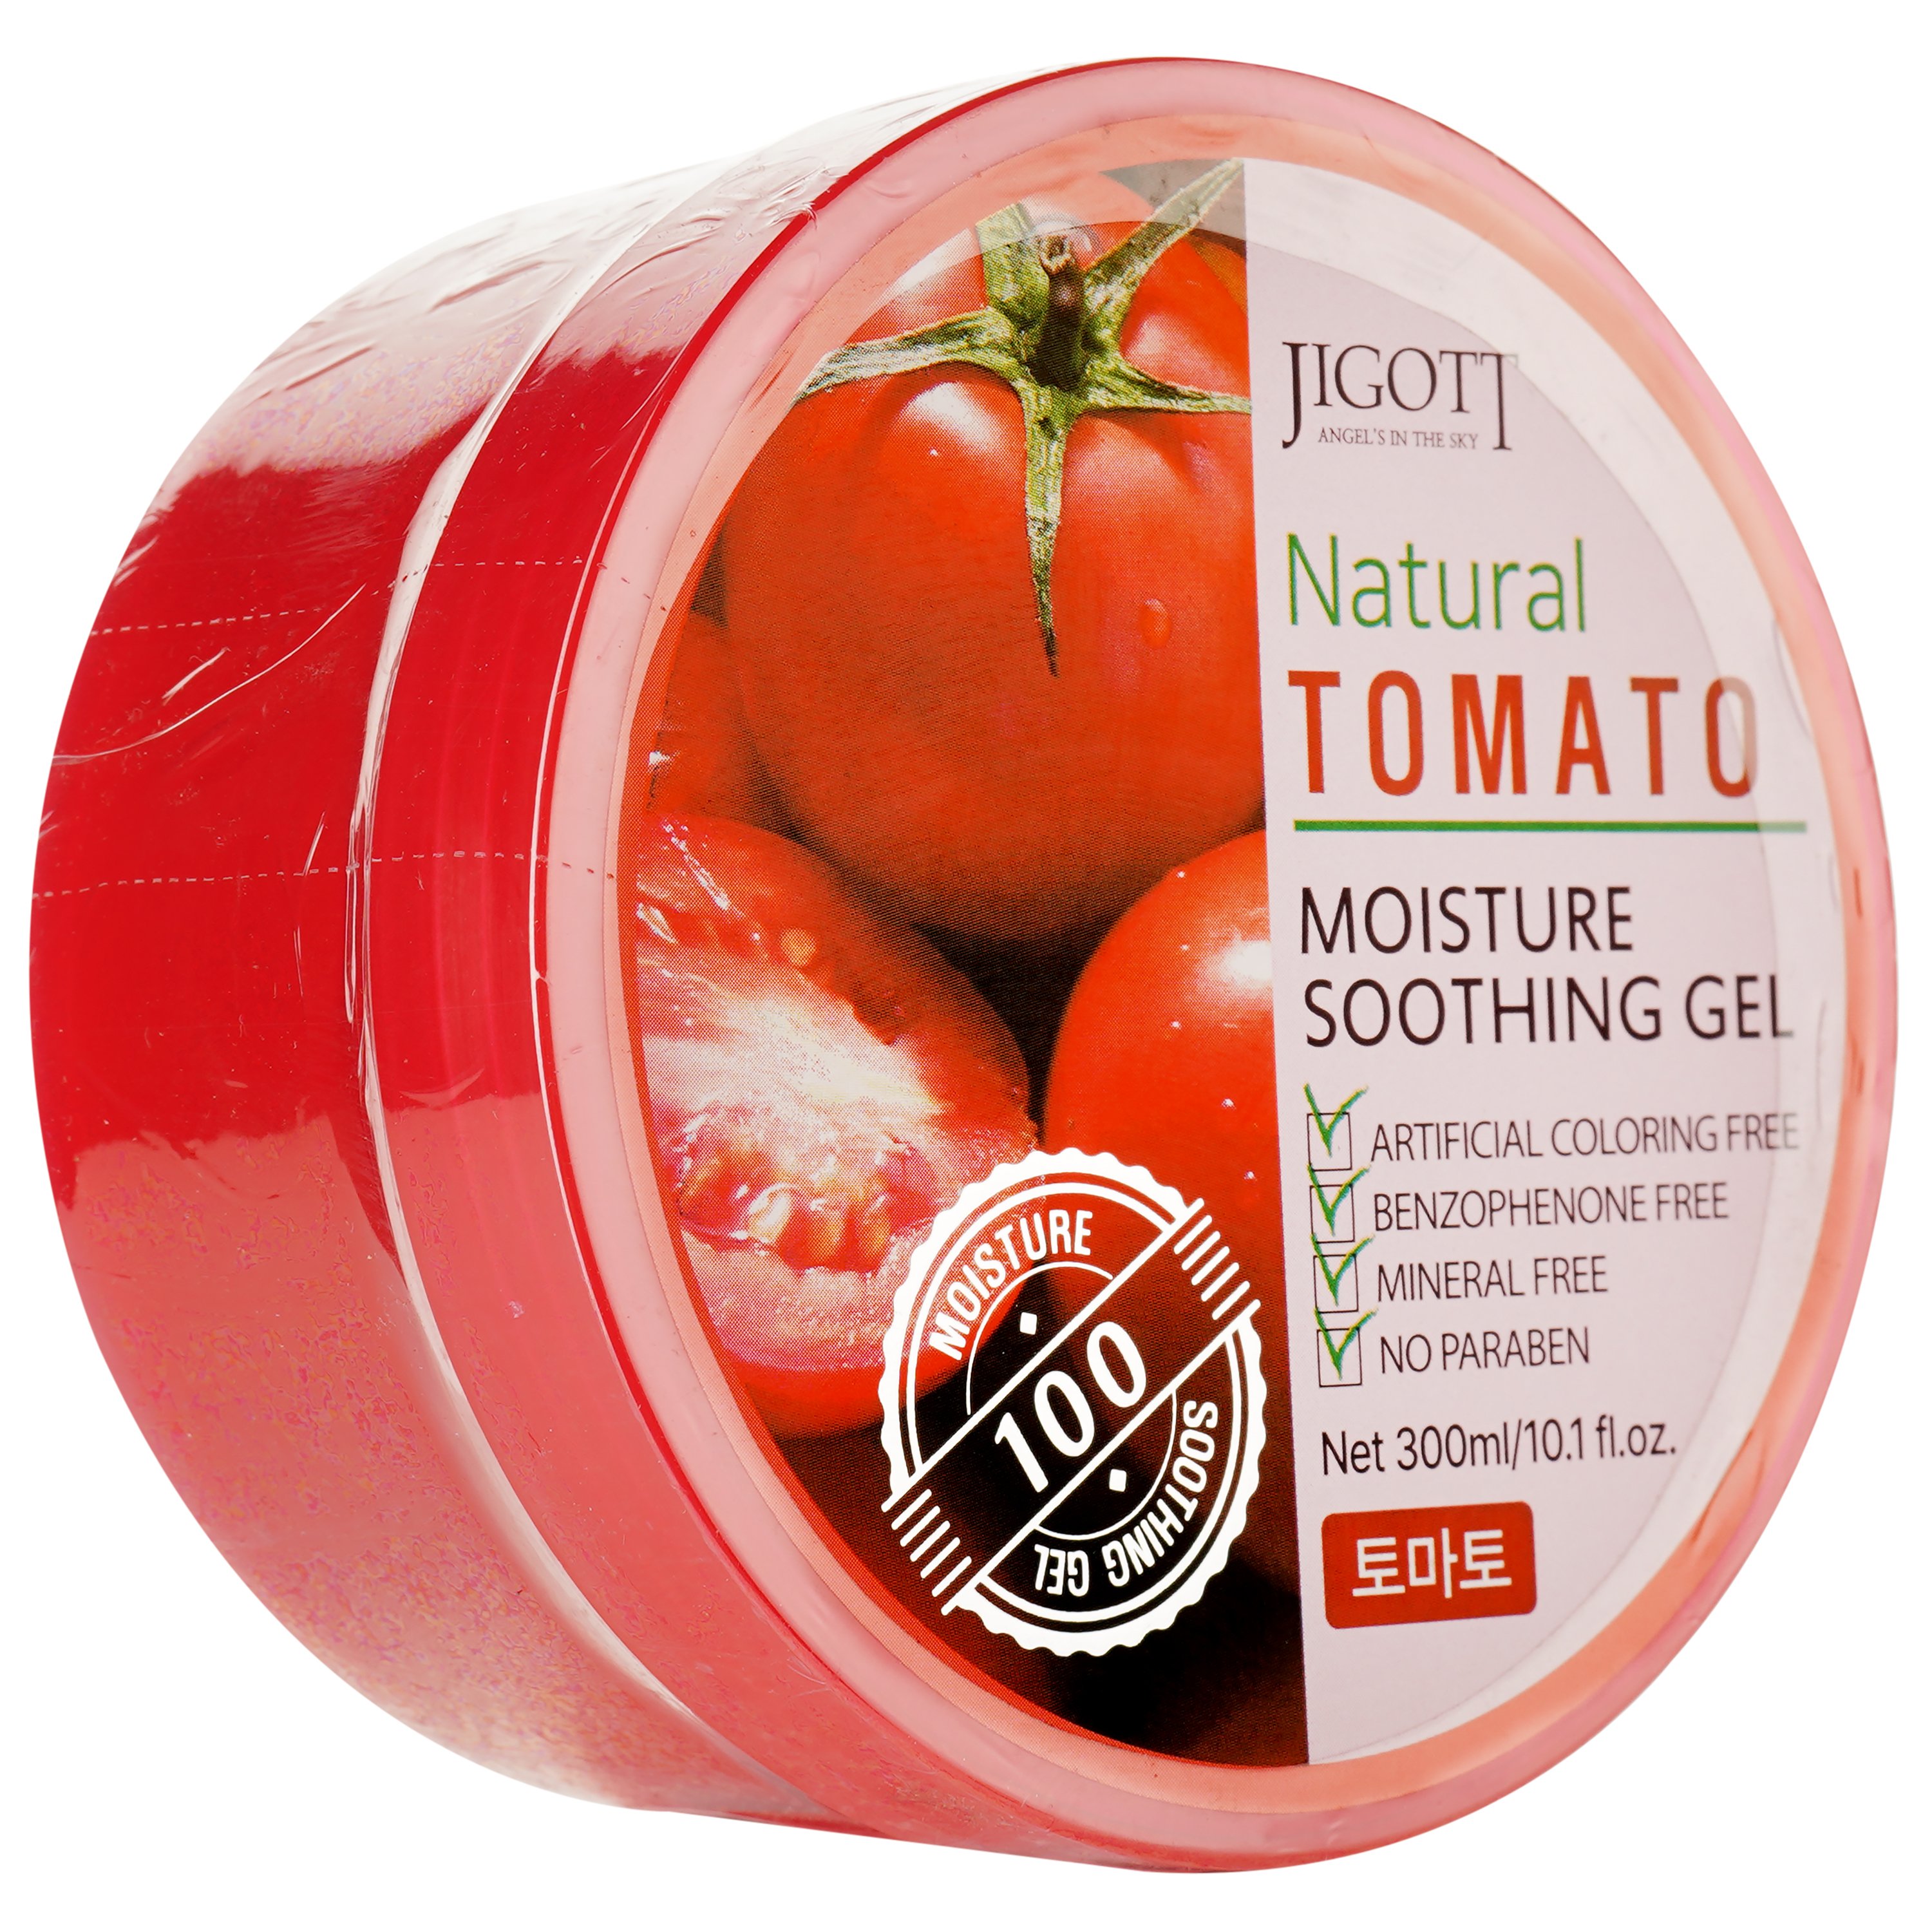 Увлажняющий гель для лица Jigott Natural Tomato Moisture Soothing Gel с экстрактом томата, 300 мл - фото 2